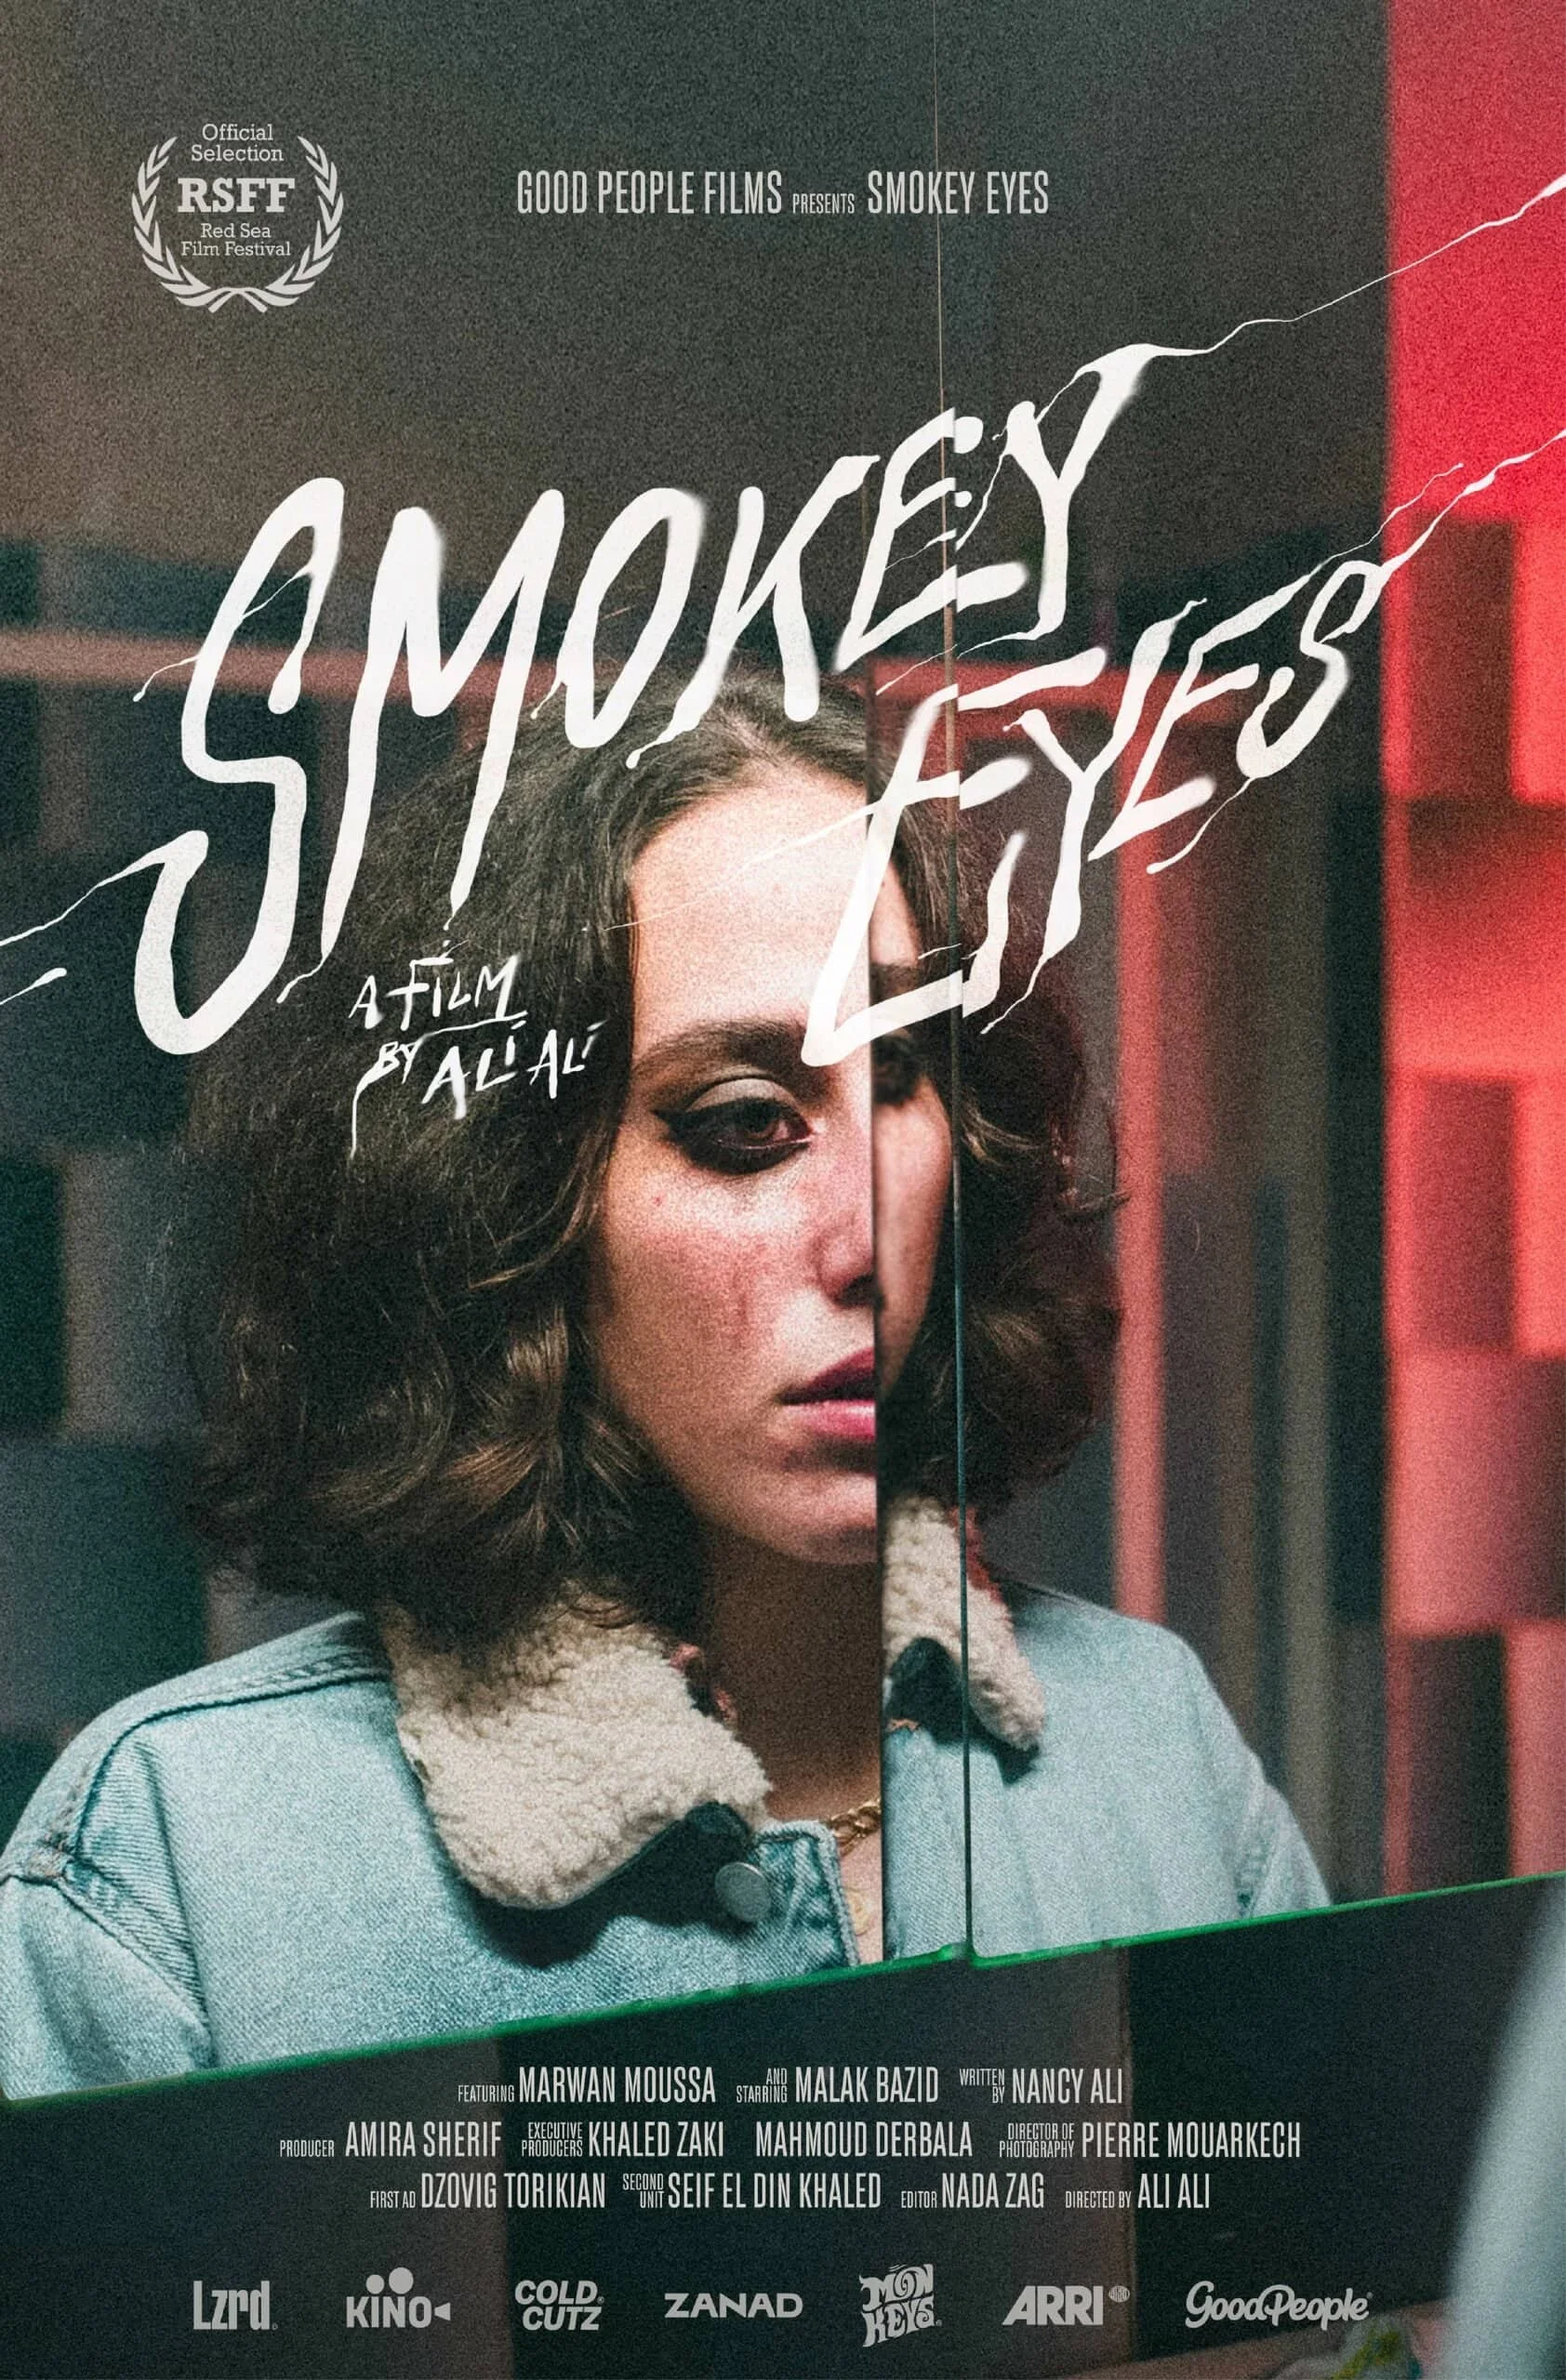 Smokey eyes poster